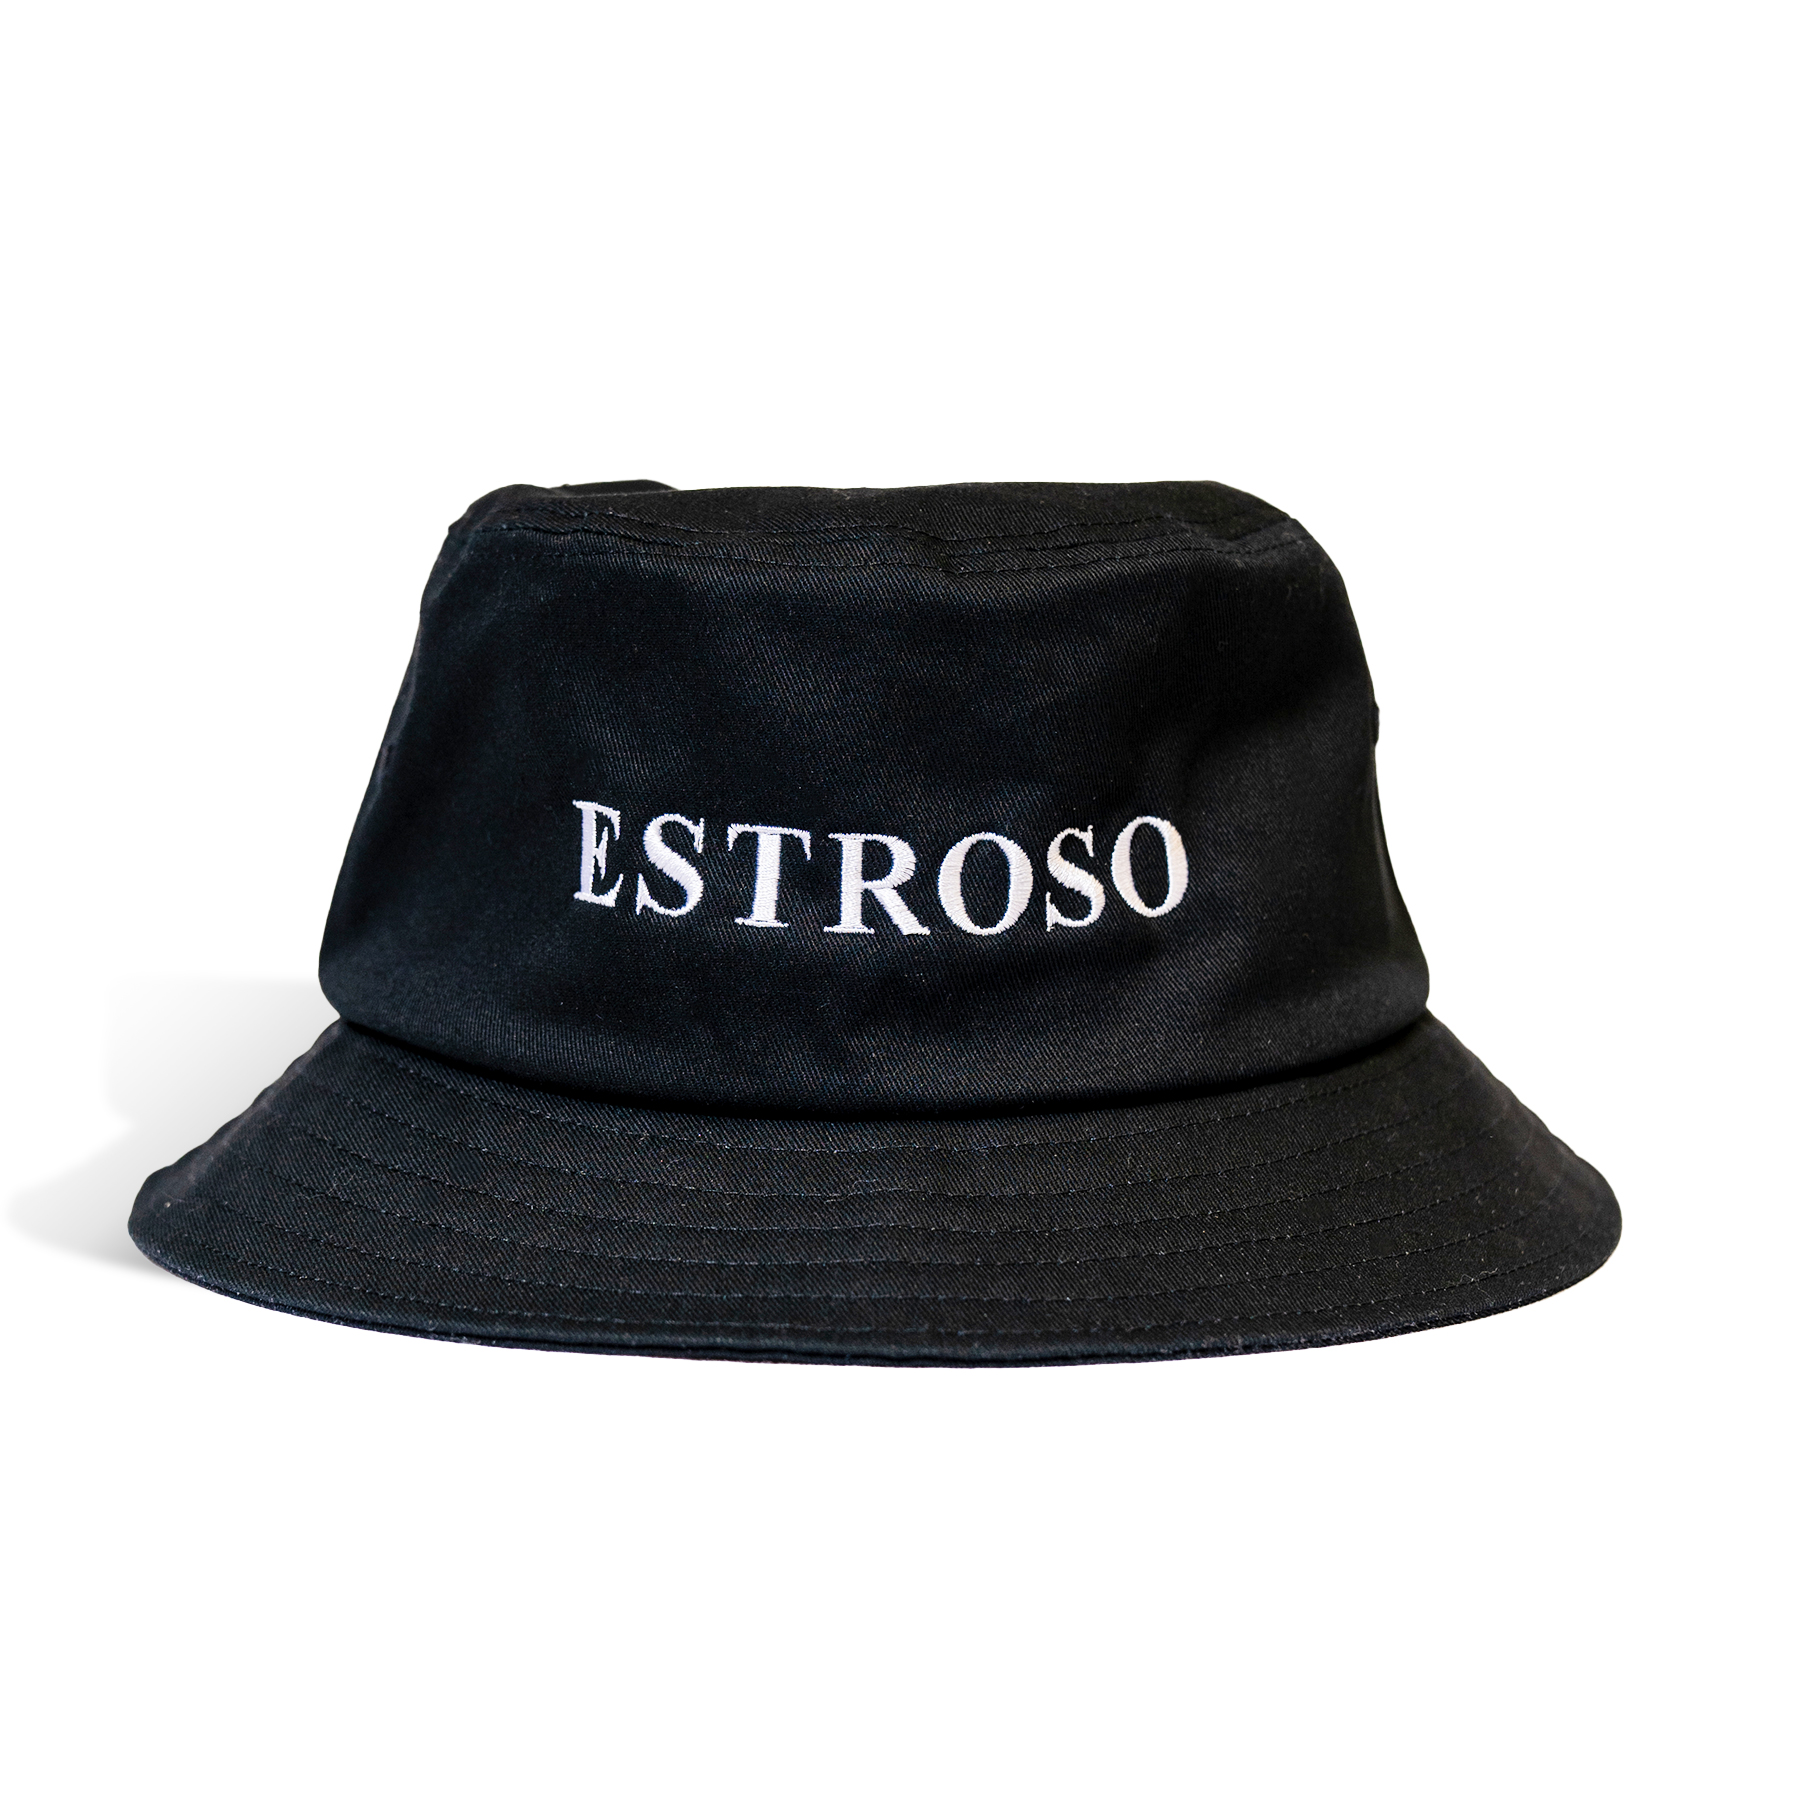 ESTROSO LOGO BUCKET HAT